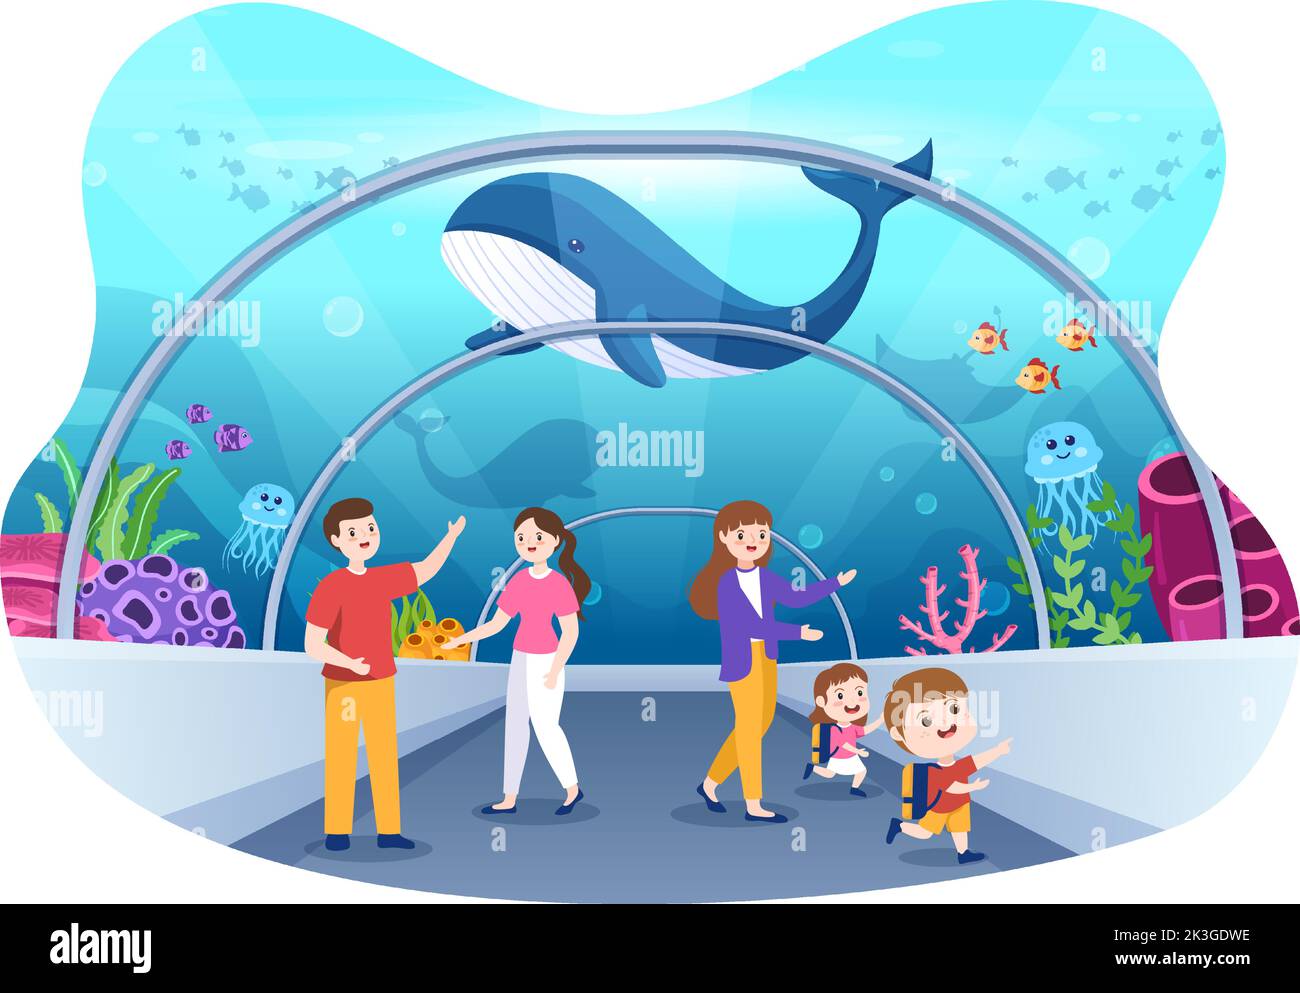 Maquette d'aquarium dessin à la main dessin à l'écran Illustration avec la famille et les enfants regardant le poisson sous-marin, la variété d'animaux marins, la flore et la faune marines Illustration de Vecteur